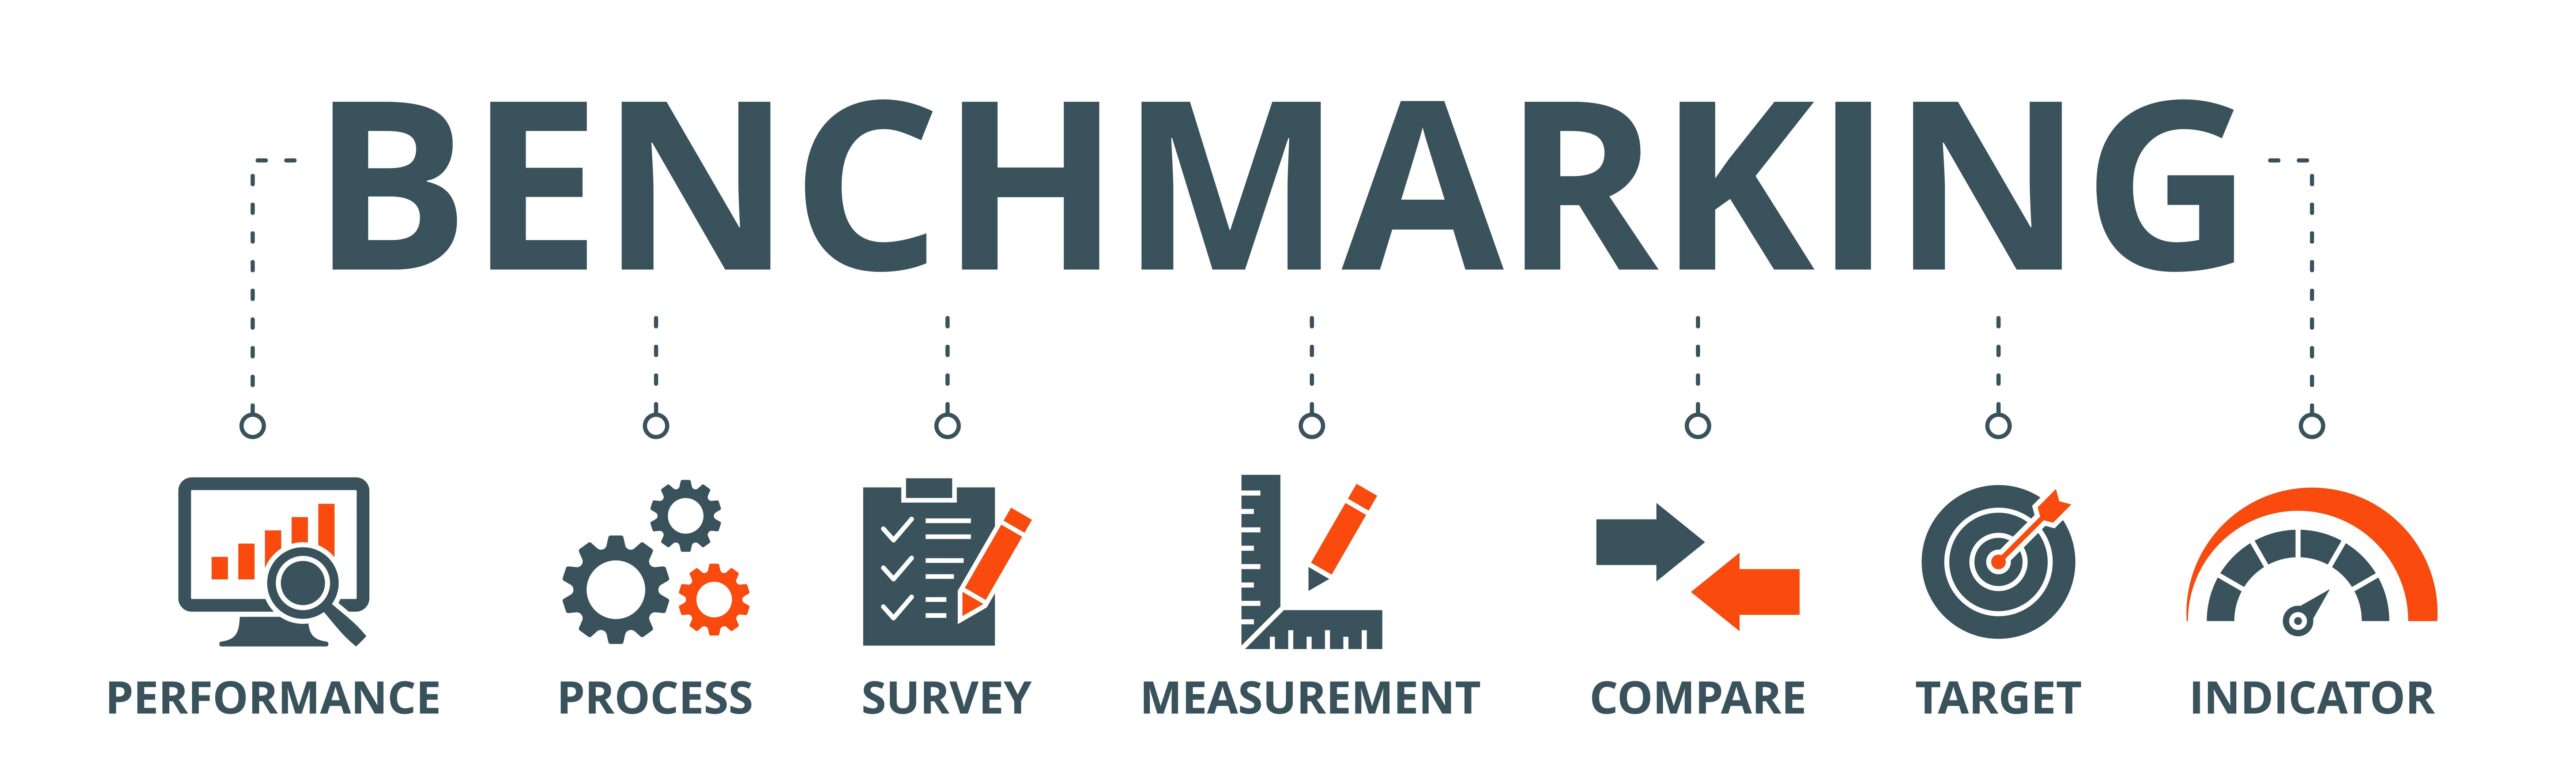 Benchmarking-7-Main-KPIs